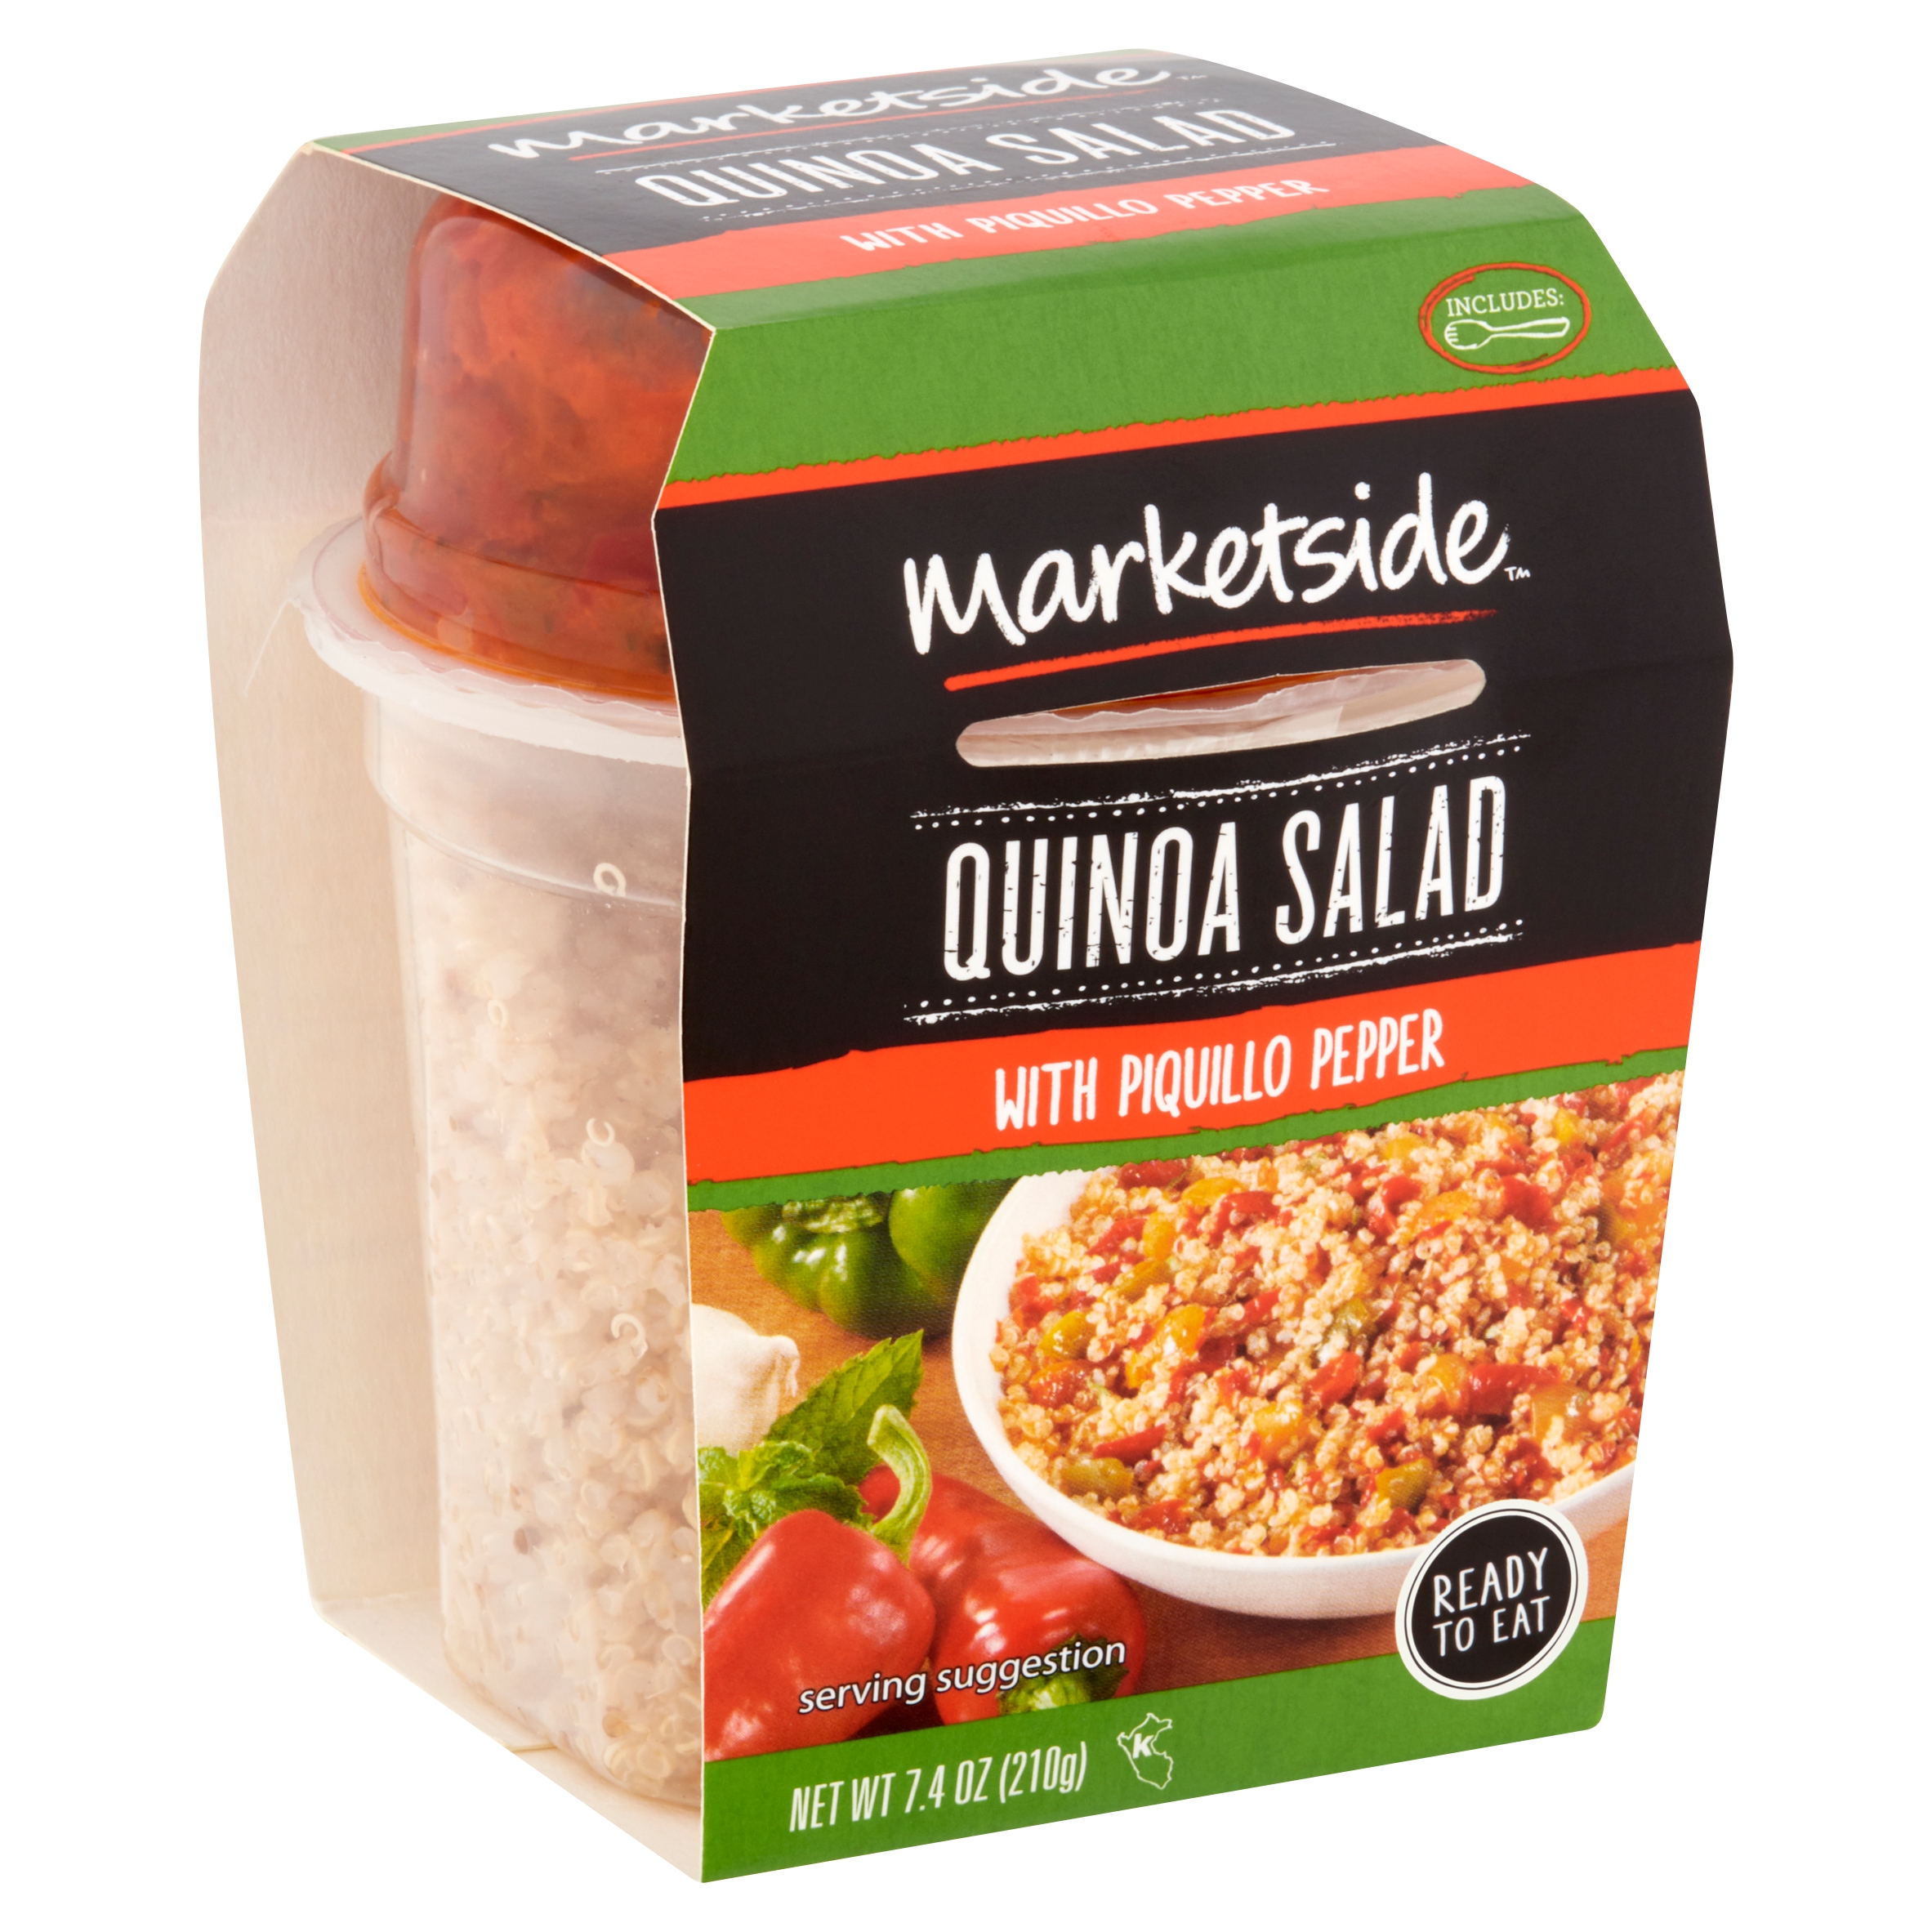 Marketside Quinoa Salad with Piquillo Pepper, 7.4 Oz